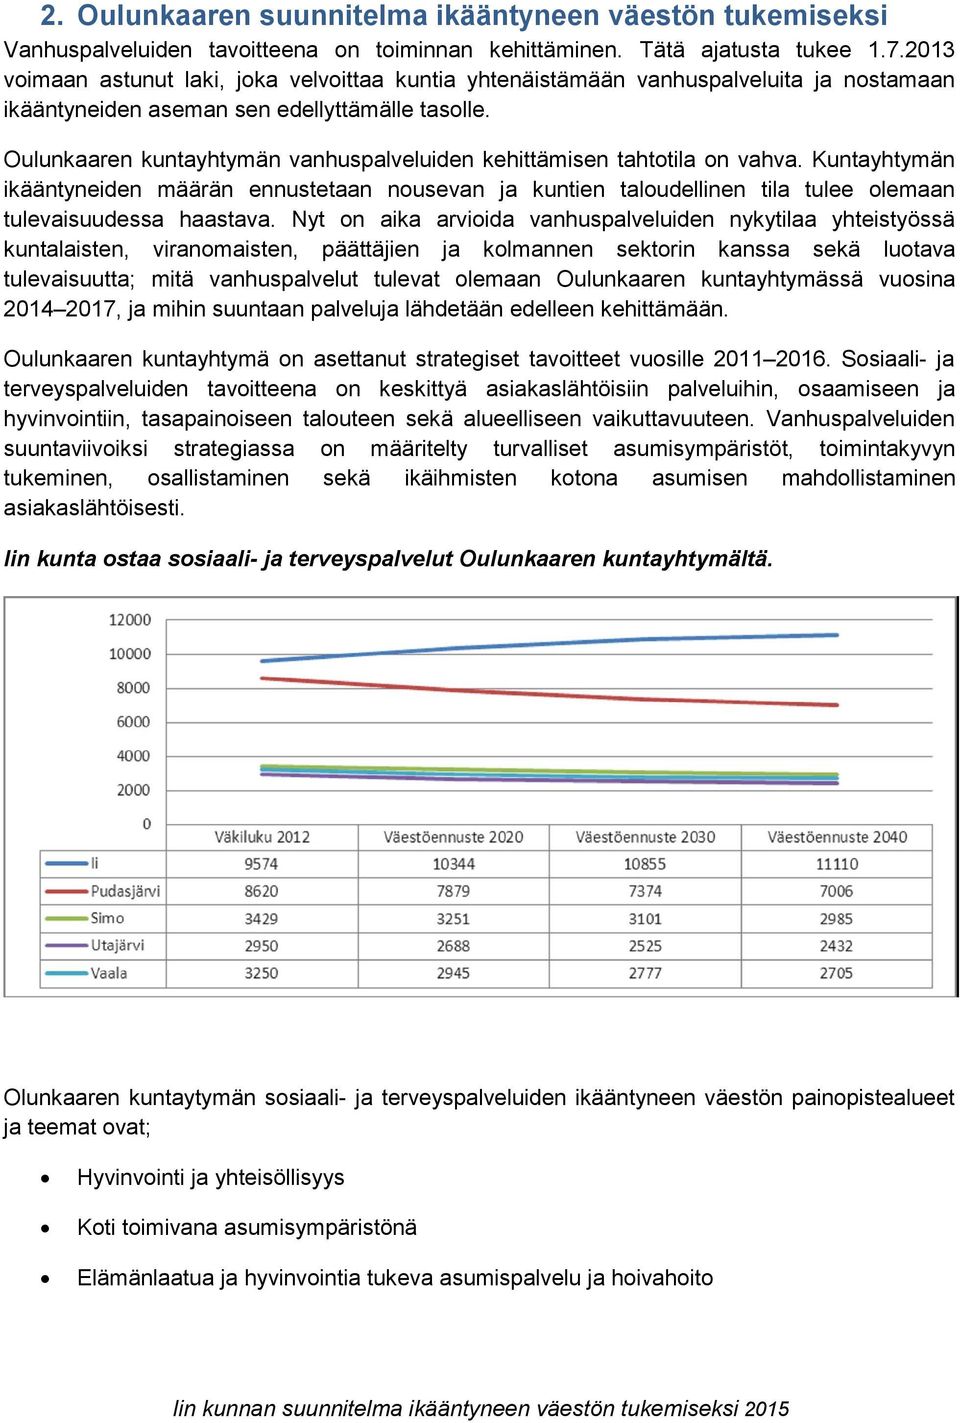 Oulunkaaren kuntayhtymän vanhuspalveluiden kehittämisen tahtotila on vahva. Kuntayhtymän ikääntyneiden määrän ennustetaan nousevan ja kuntien taloudellinen tila tulee olemaan tulevaisuudessa haastava.